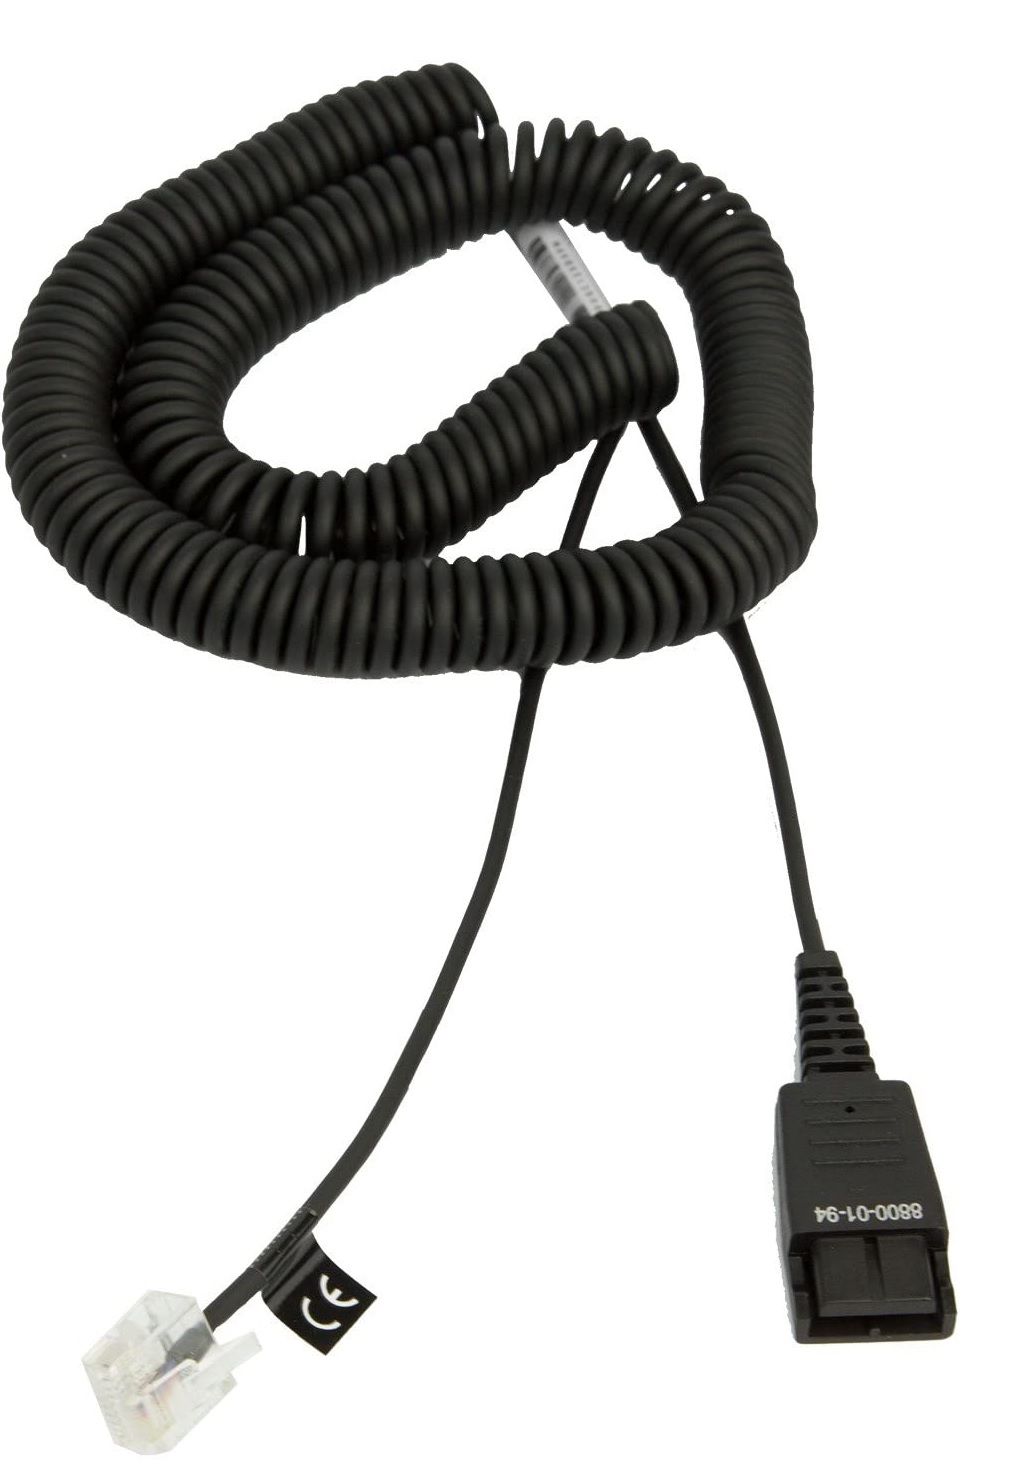 Cable Adaptador QD a RJ-45 - Jabra 8800-01-94 | 2203 - Cable de desconexión rápida QD a Modular RJ-45 para teléfonos Siemens OpenStage, Color: Negro, Espiral, Longitud: 50 cm, Longitud espiral: 2 m, Conector RJ45 y QD